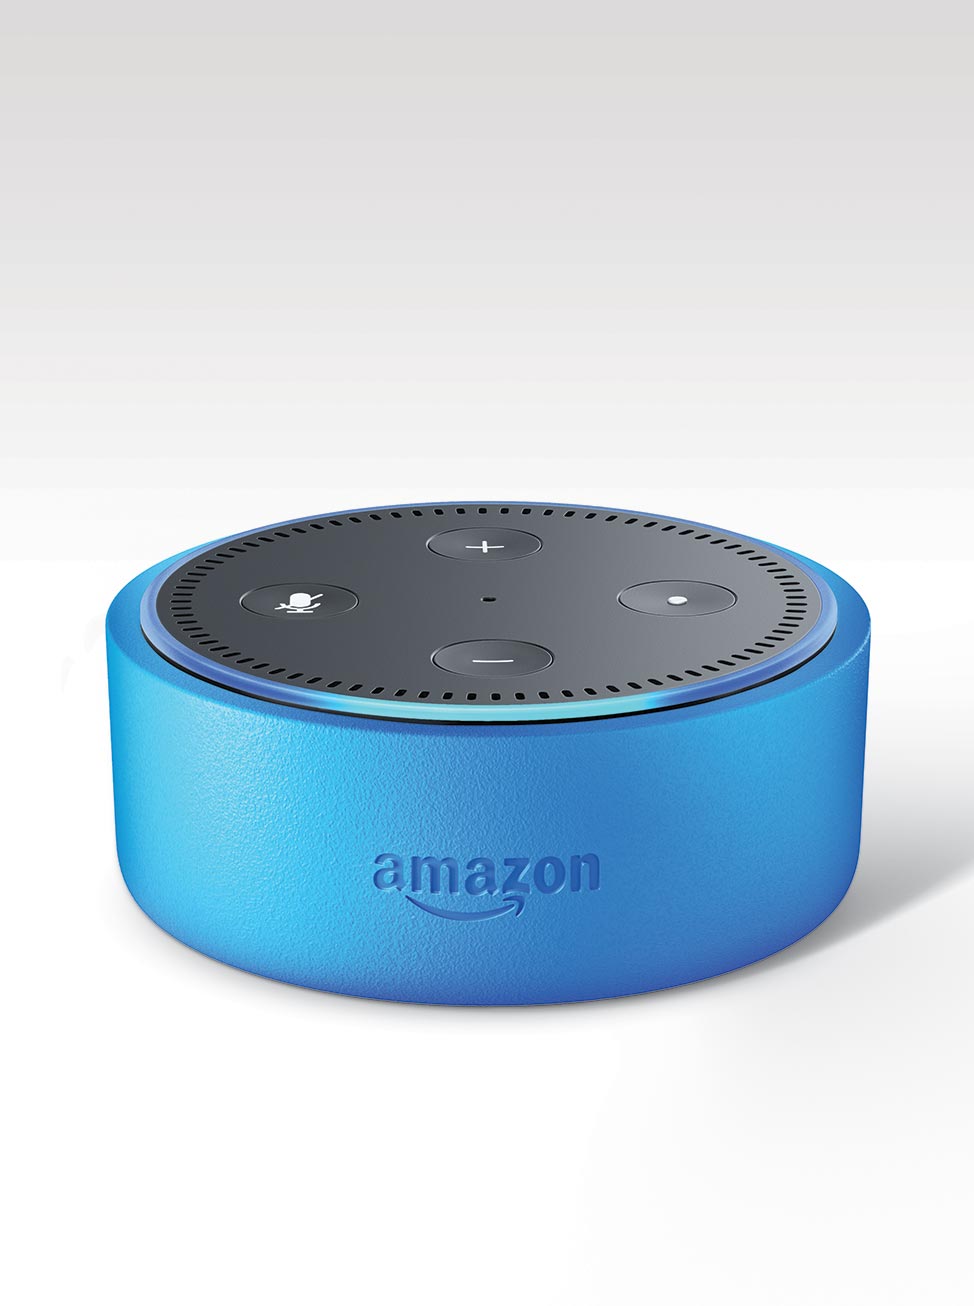 Amazon Echo Dot Kids Edition smart speaker for children